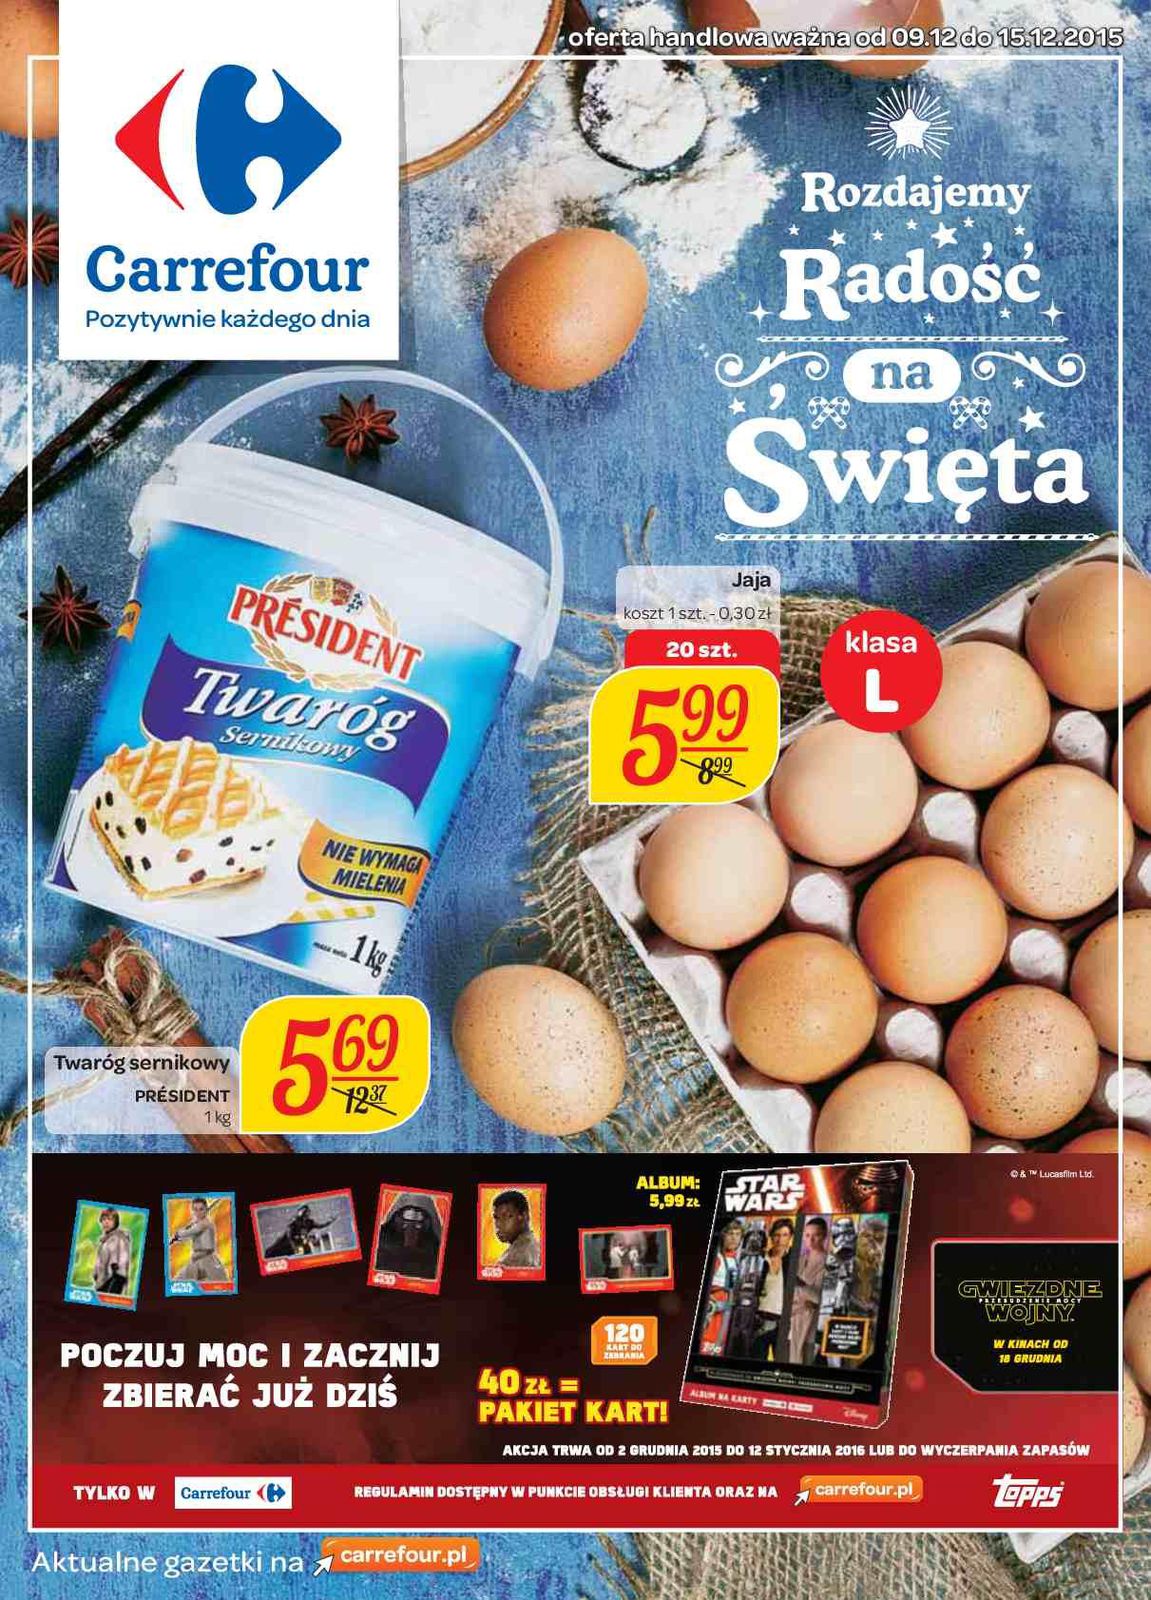 Gazetka promocyjna Carrefour do 15/12/2015 str.0